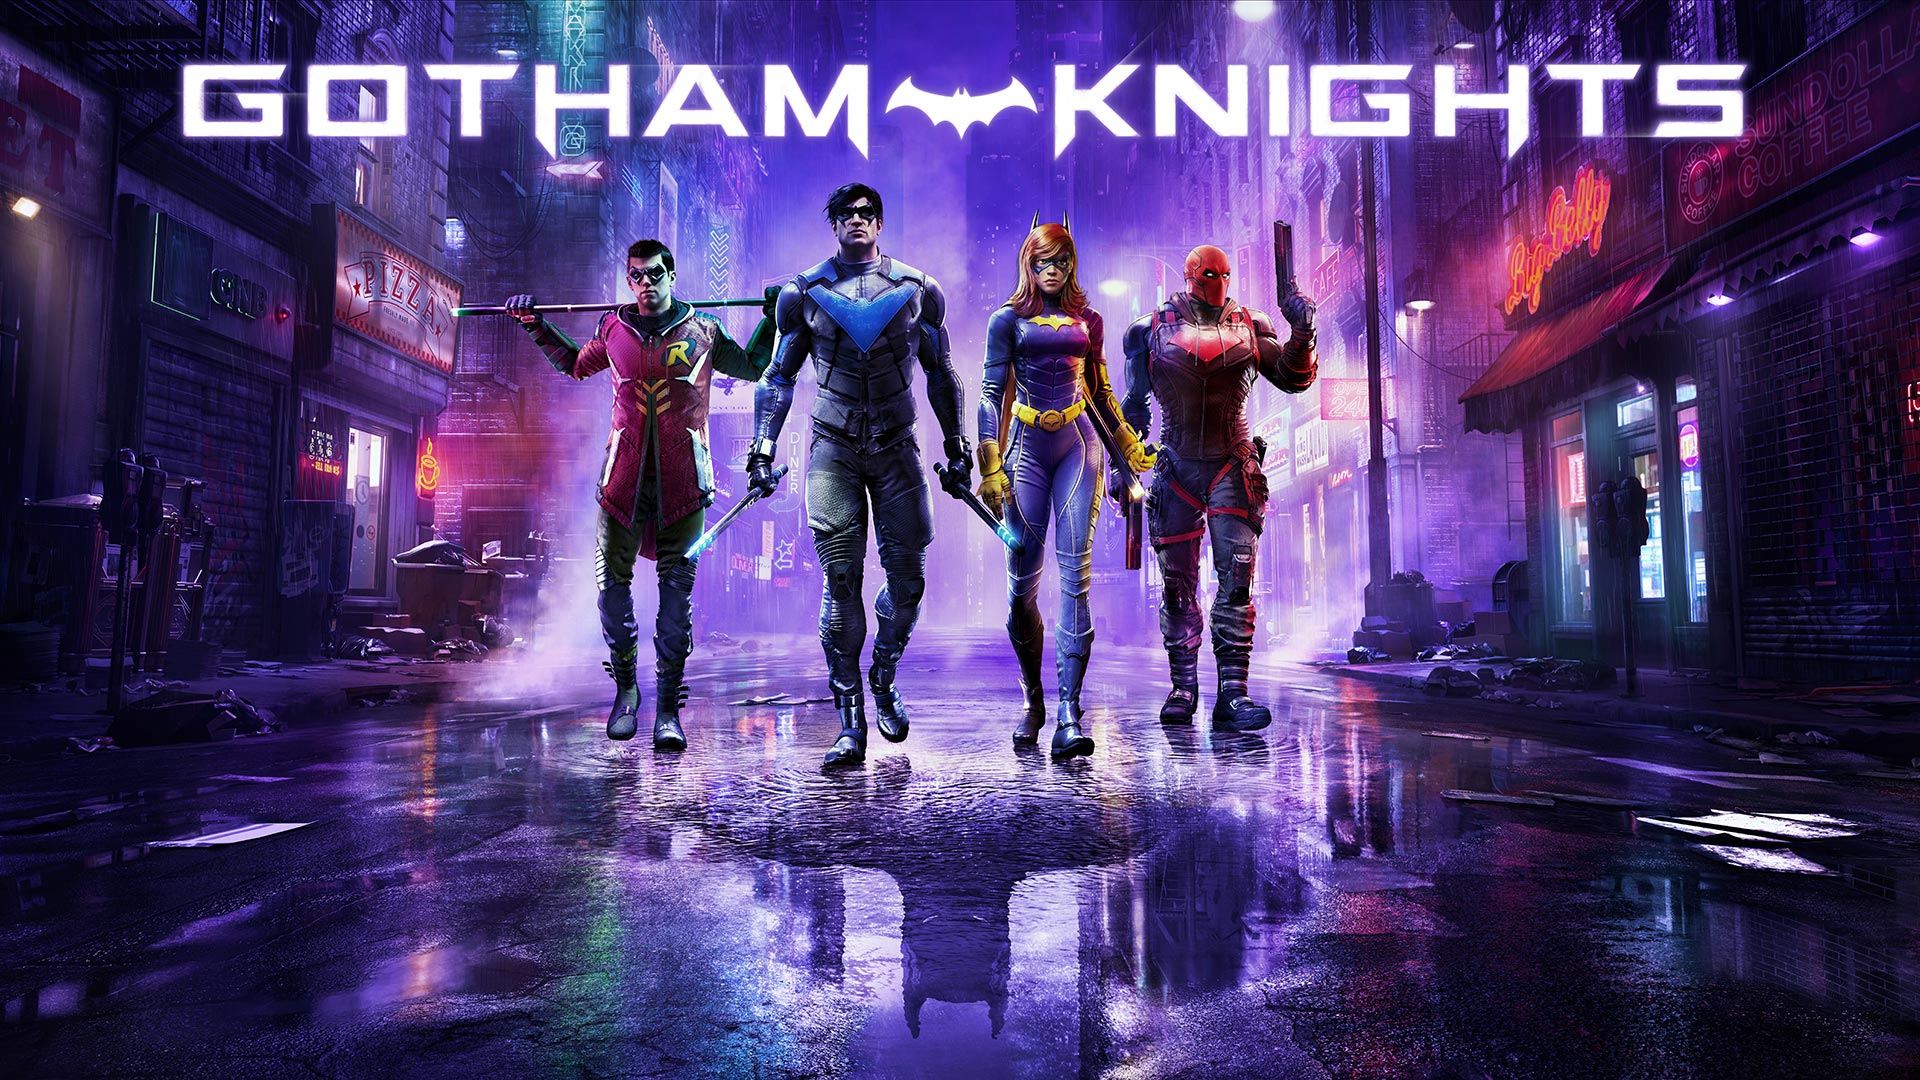 Os quatro heróis de Gotham Knights andando em uma rua roxa abaixo do texto do título do jogo.